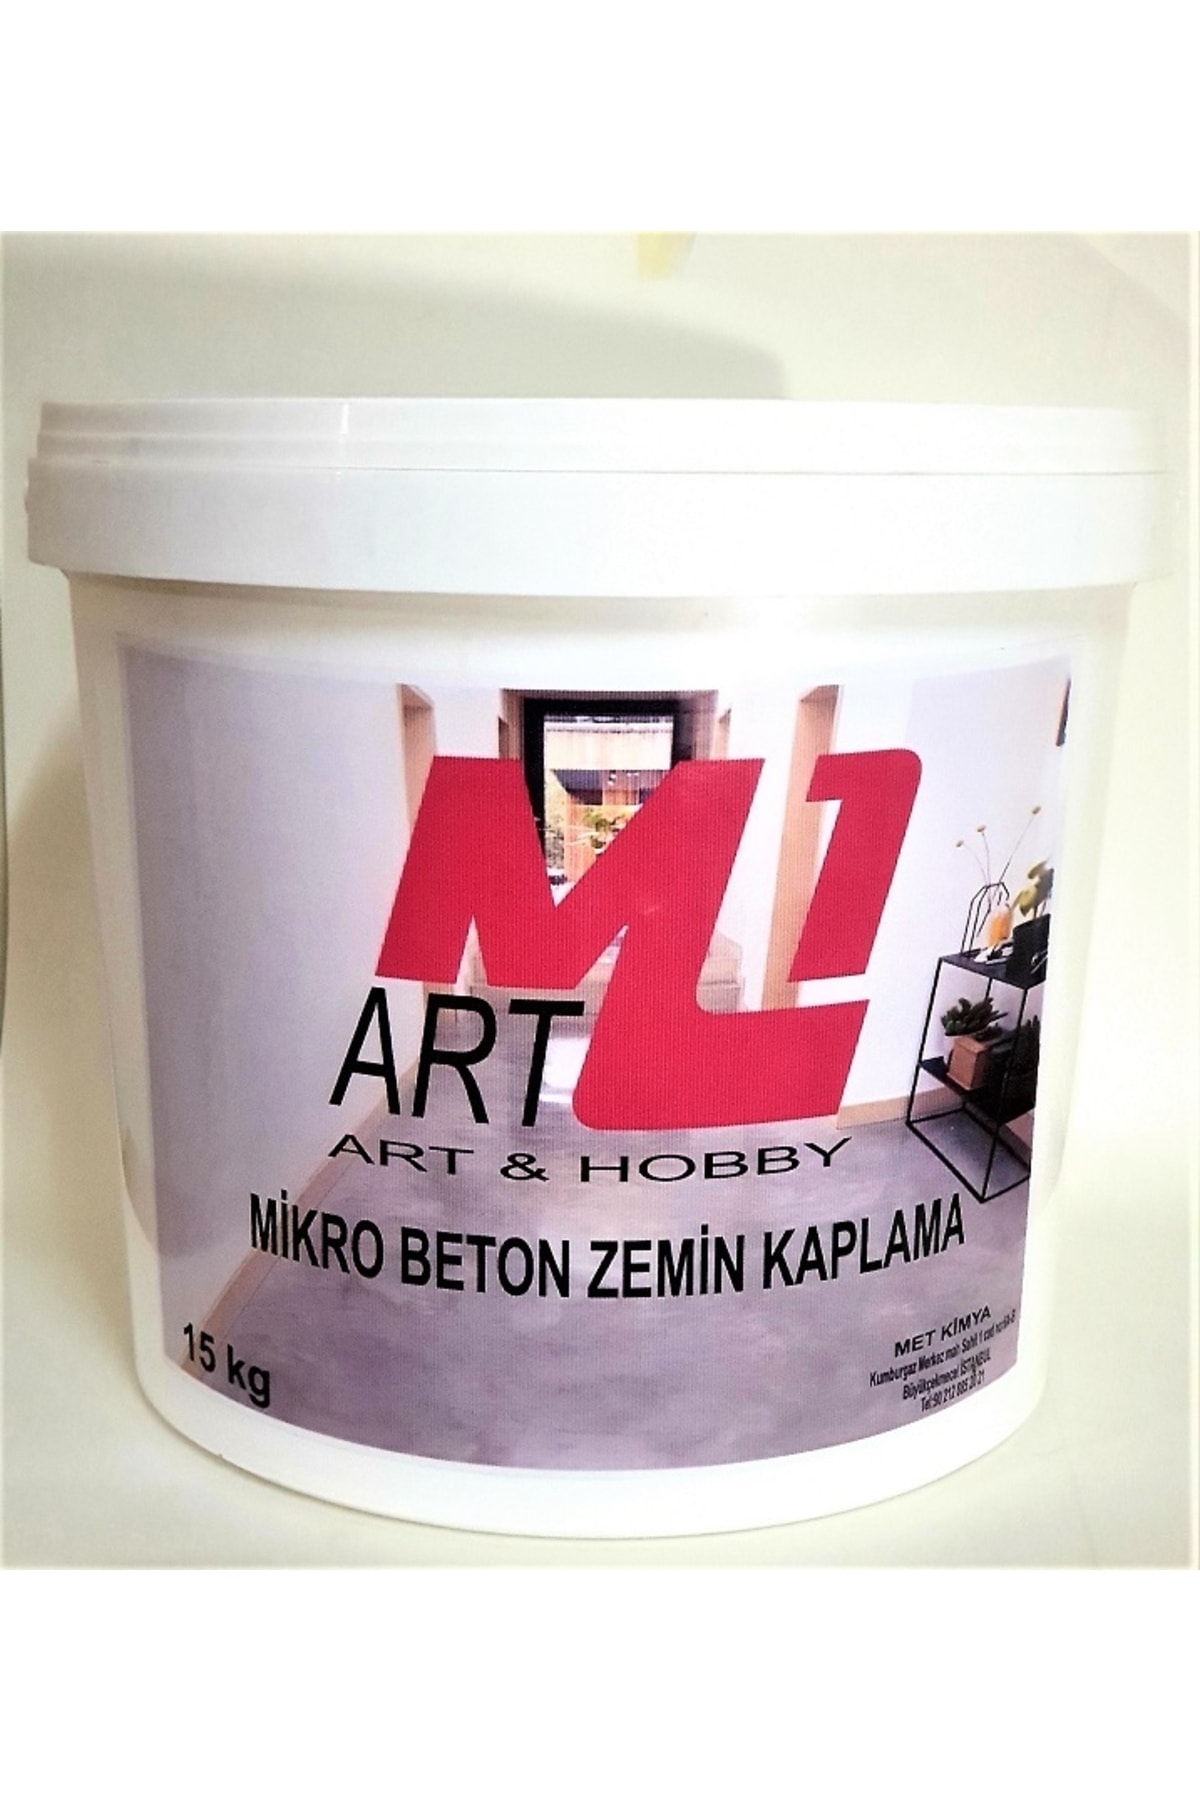 M1 Art Mikro Beton Zemin Kaplaması 1.kğ Fiyatı - Taksit ...